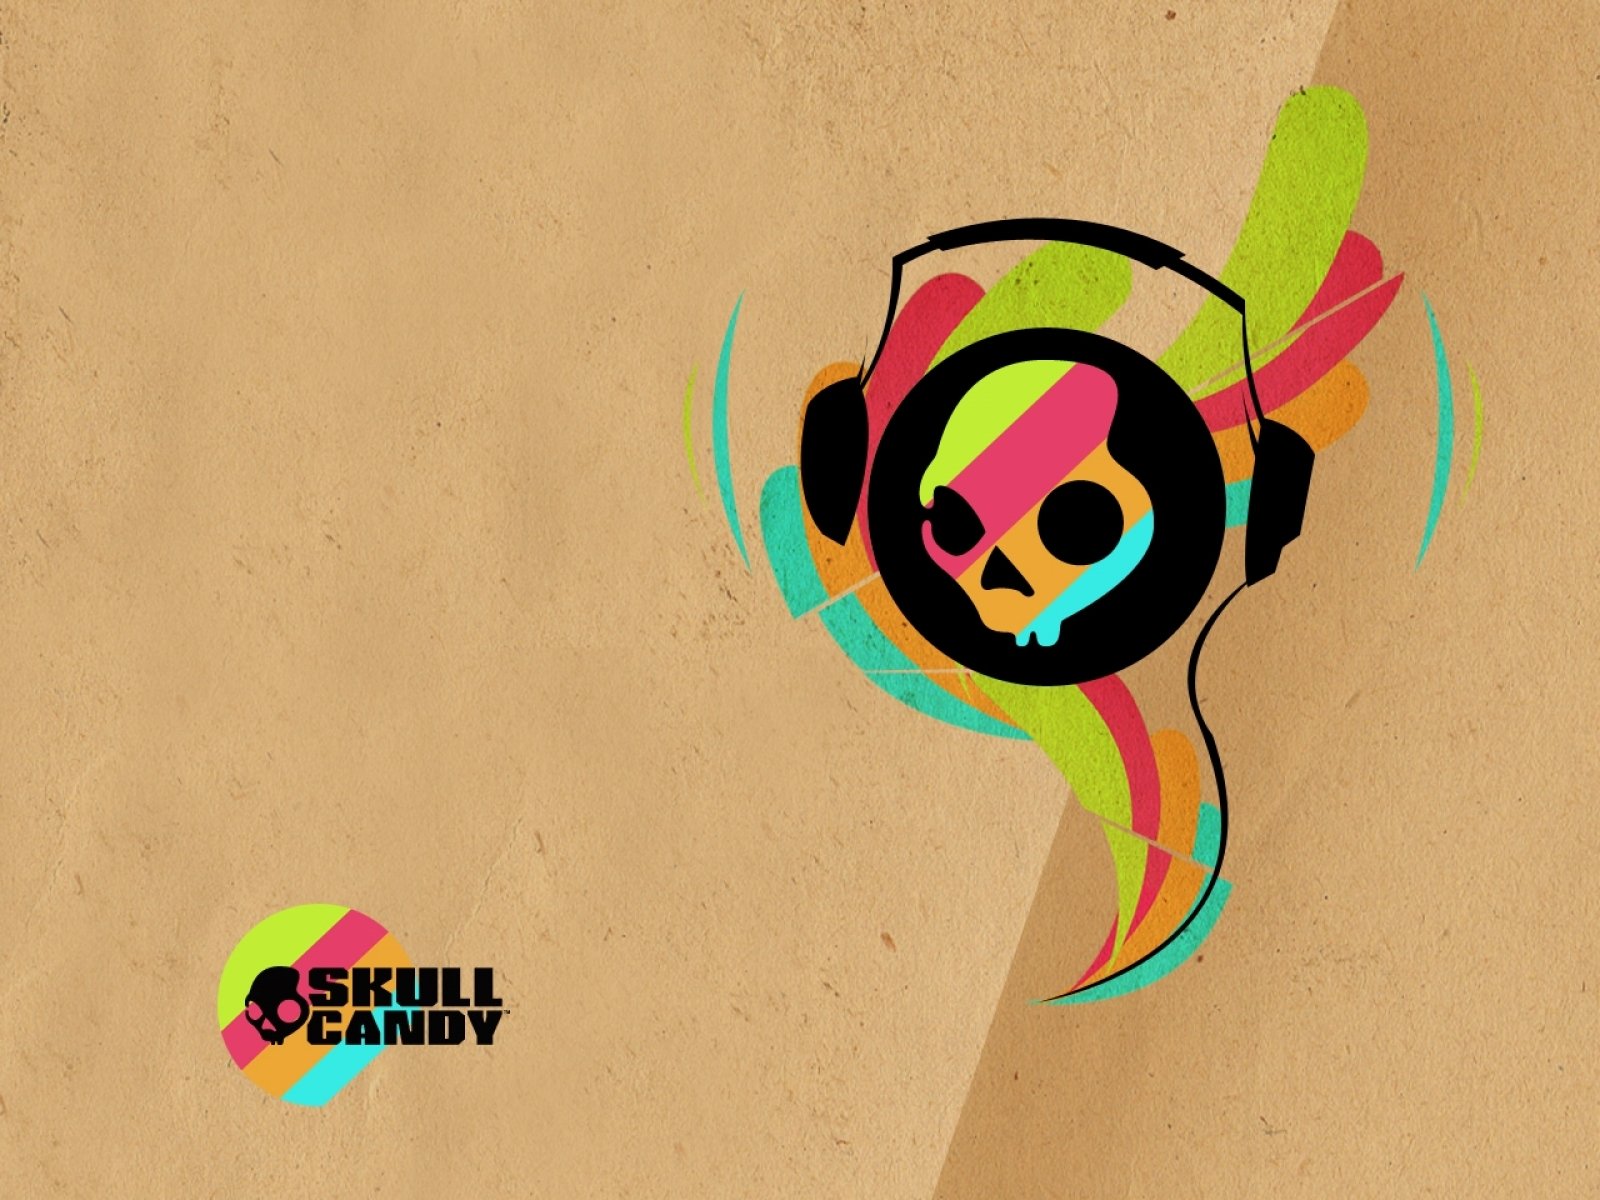 skullcandy, Headphones, Music, Stereo, Radio, Speaker, Speakers, 1scandy, Skull, Poster Wallpaper